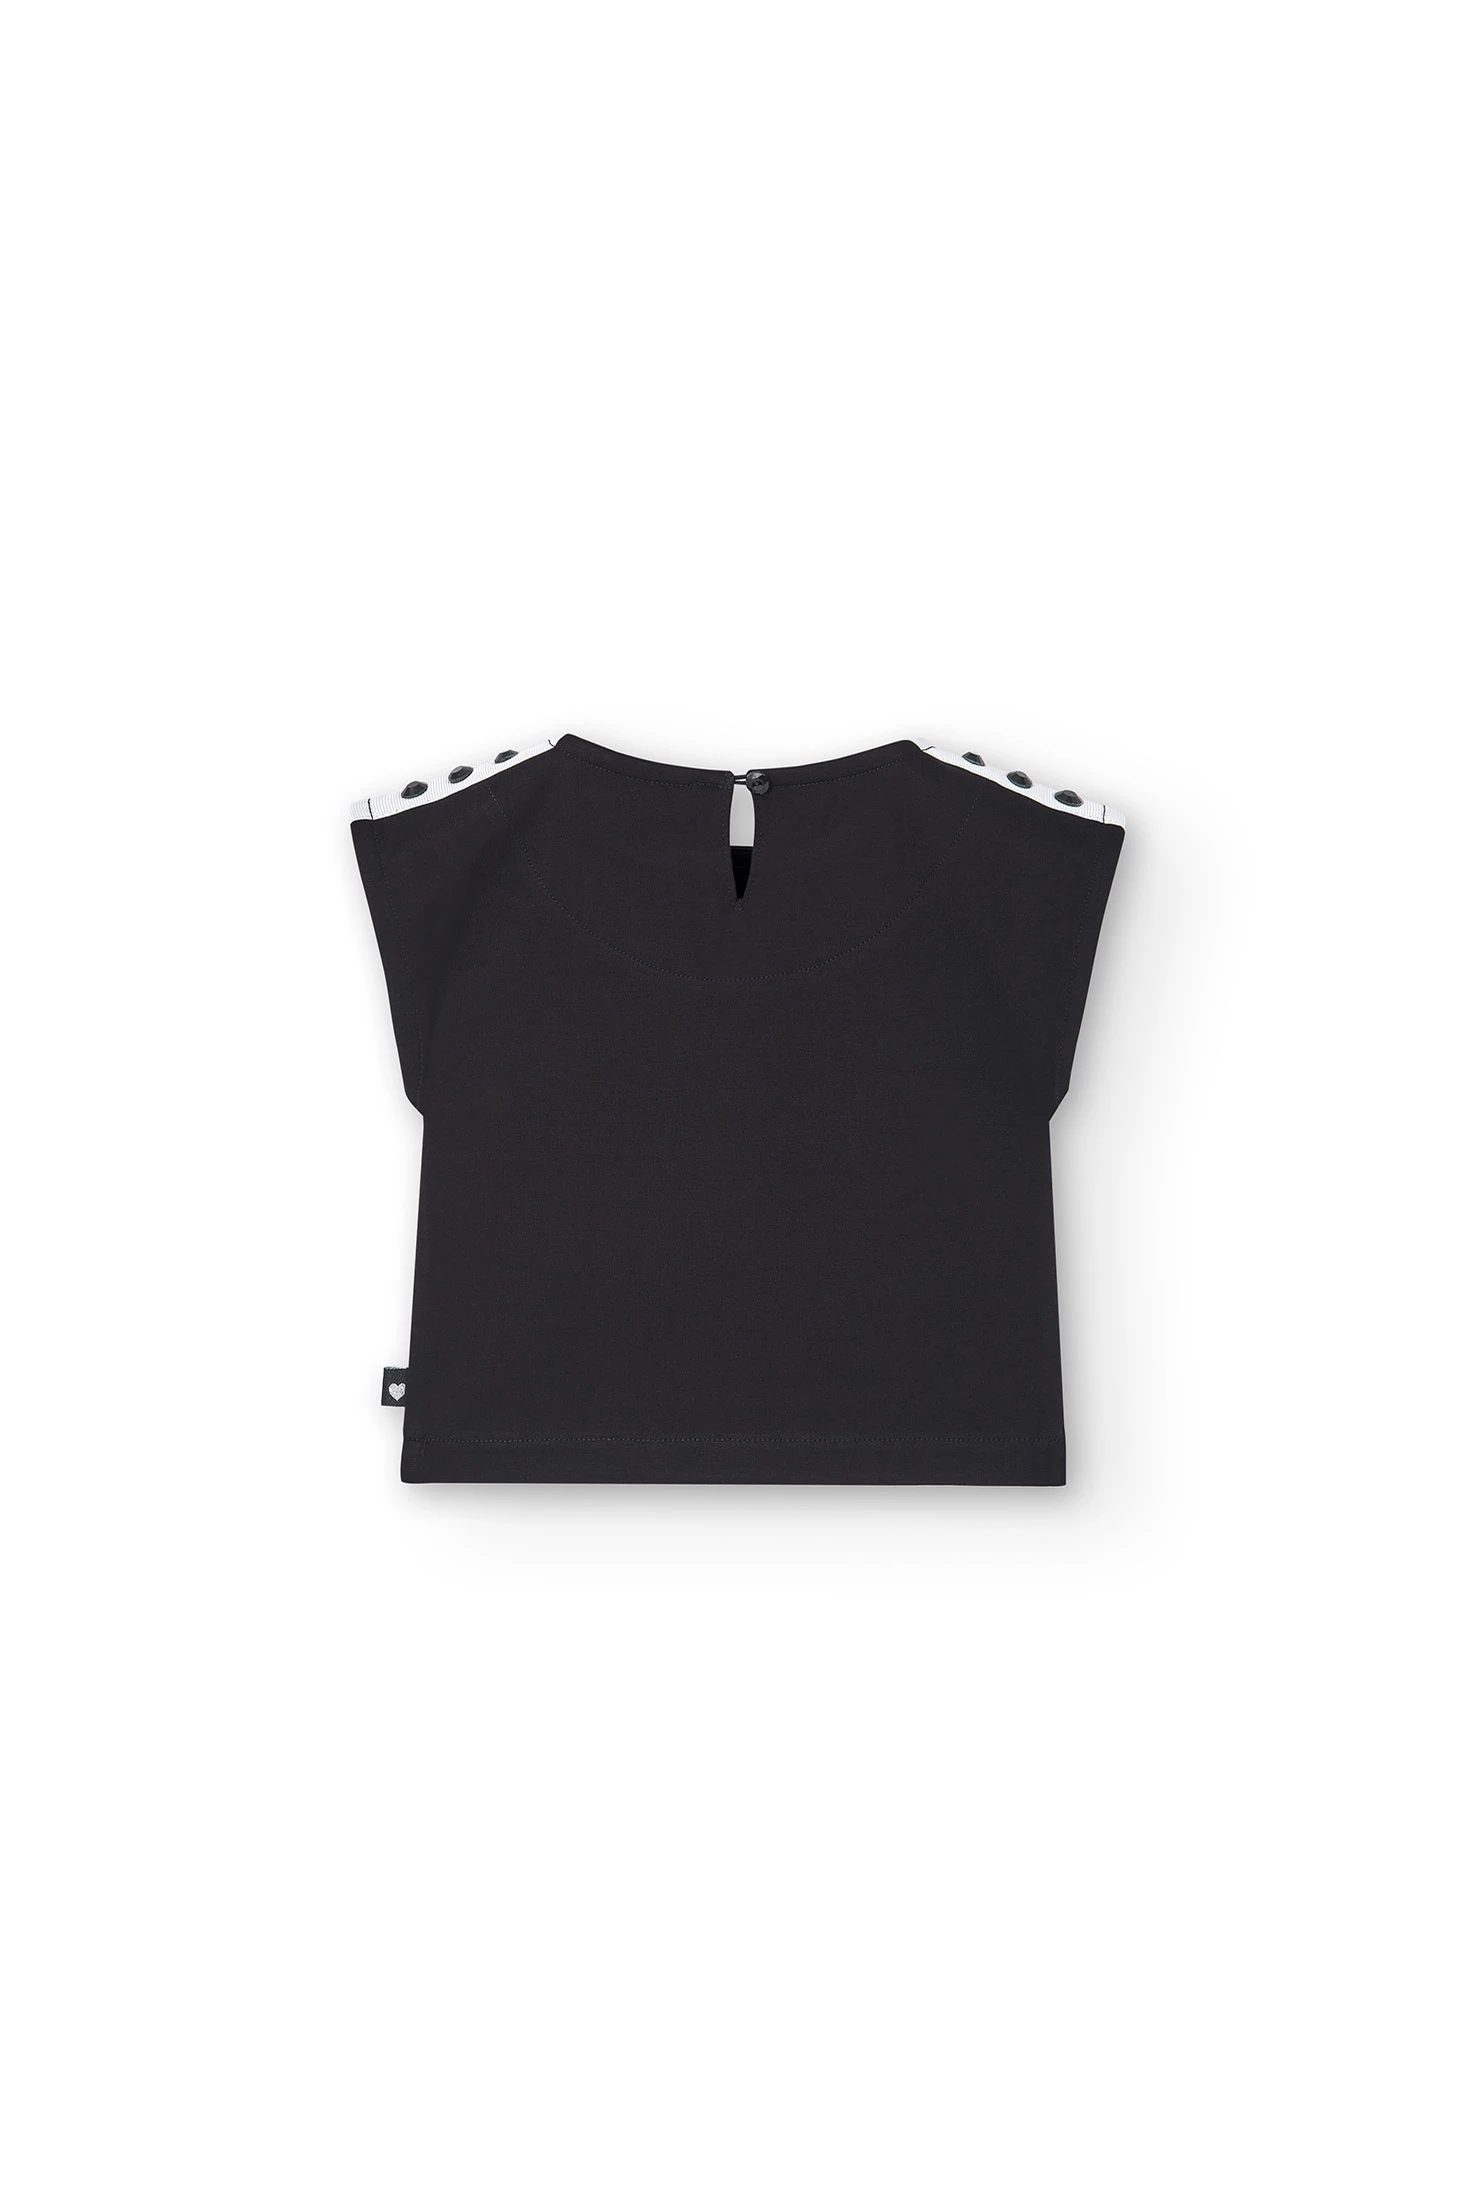 Camiseta negra niña: 3,50 € - Miss Puntadas